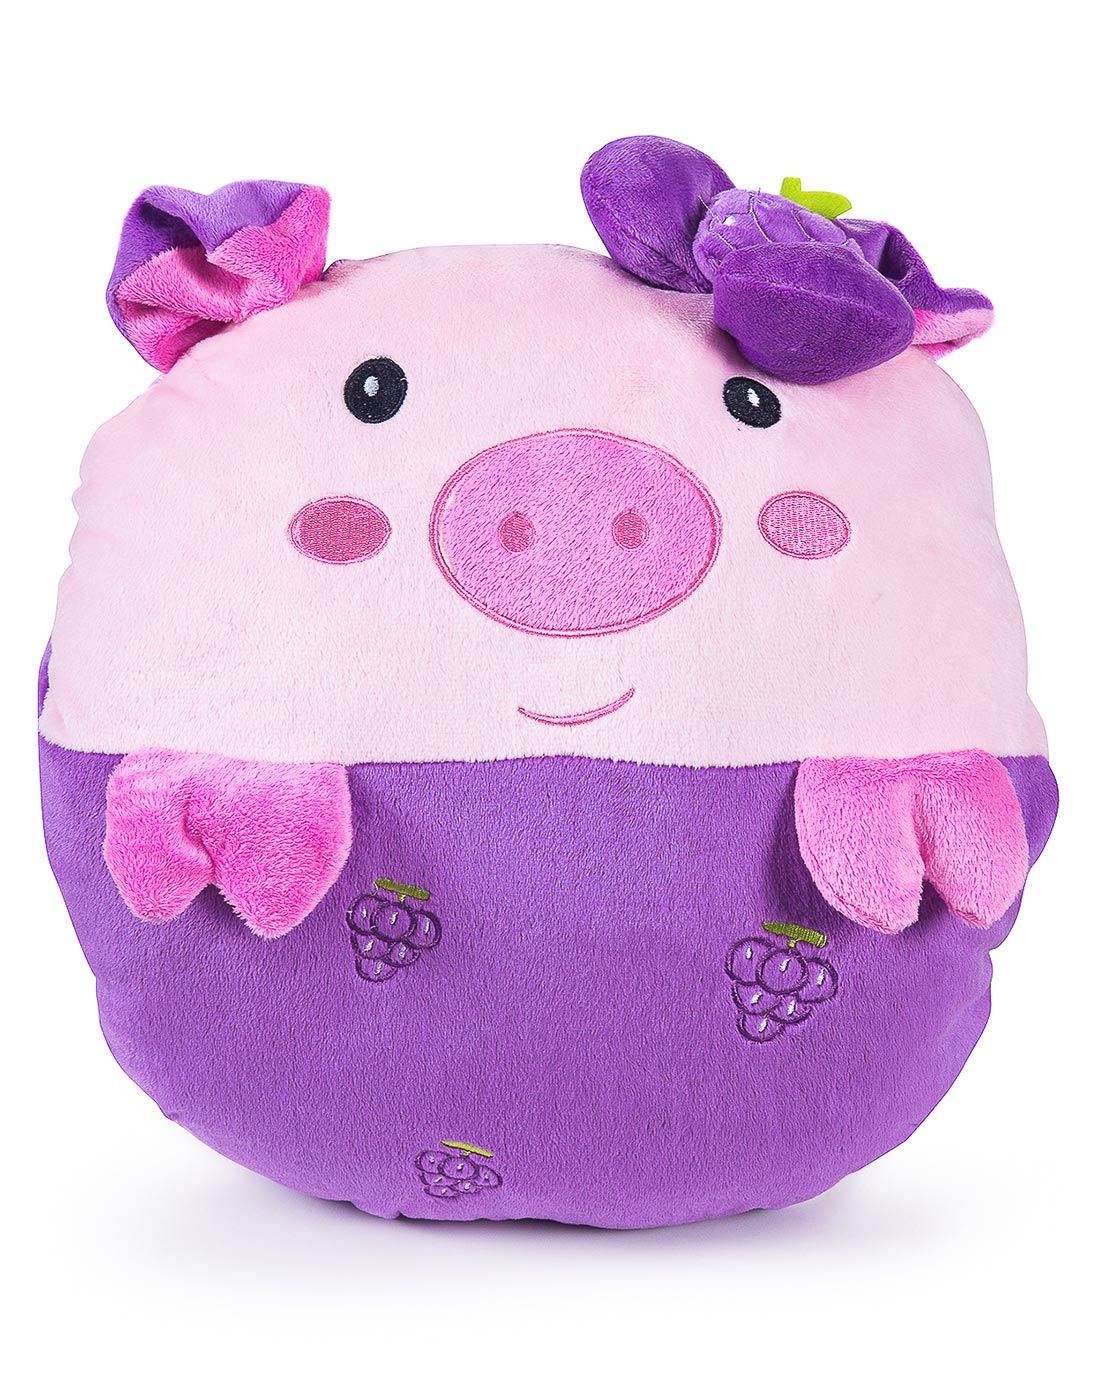 可爱紫色水果猪暖手抱枕